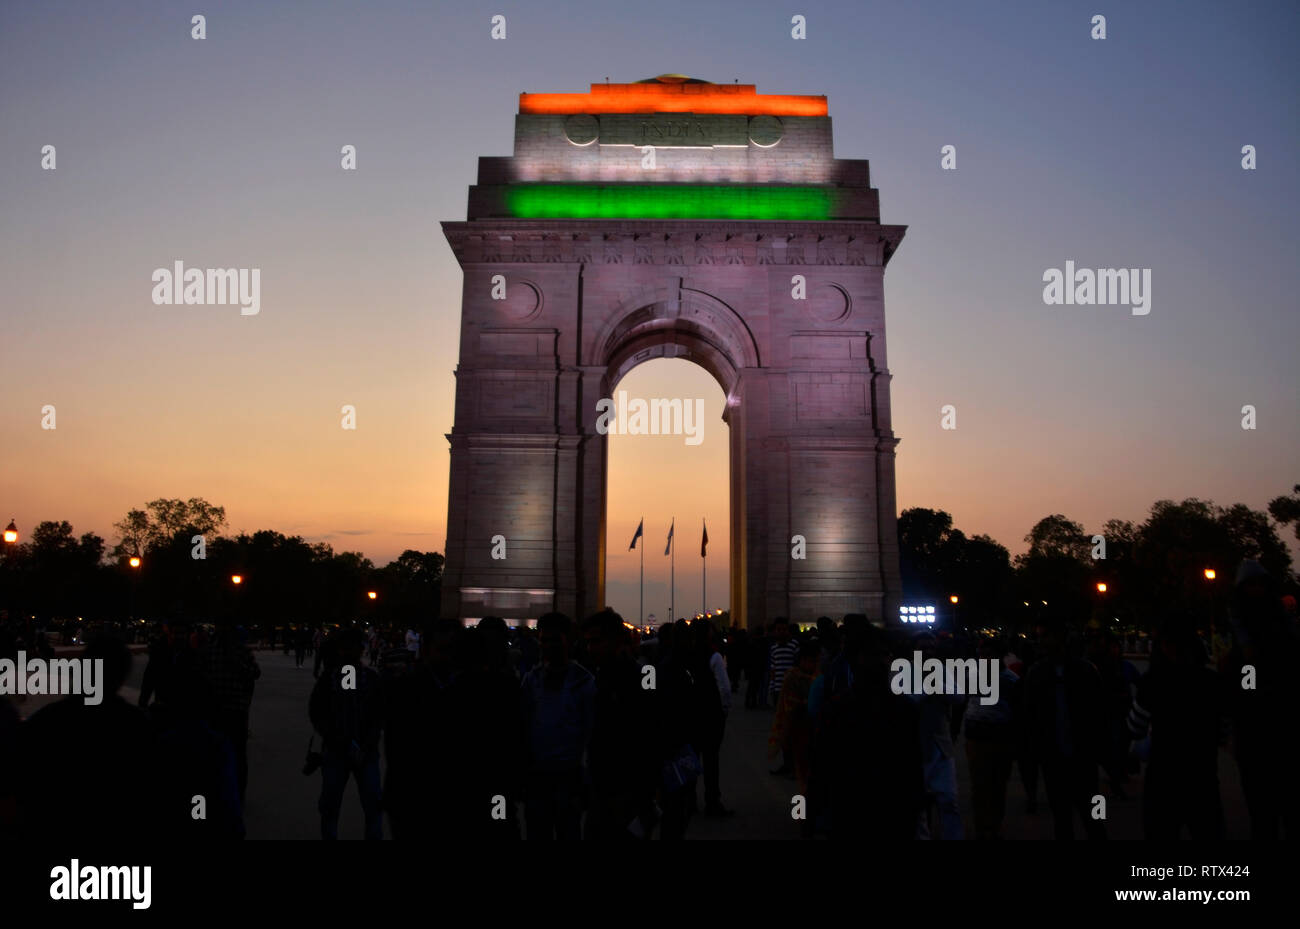 India Gate, New Delhi Stock Photo